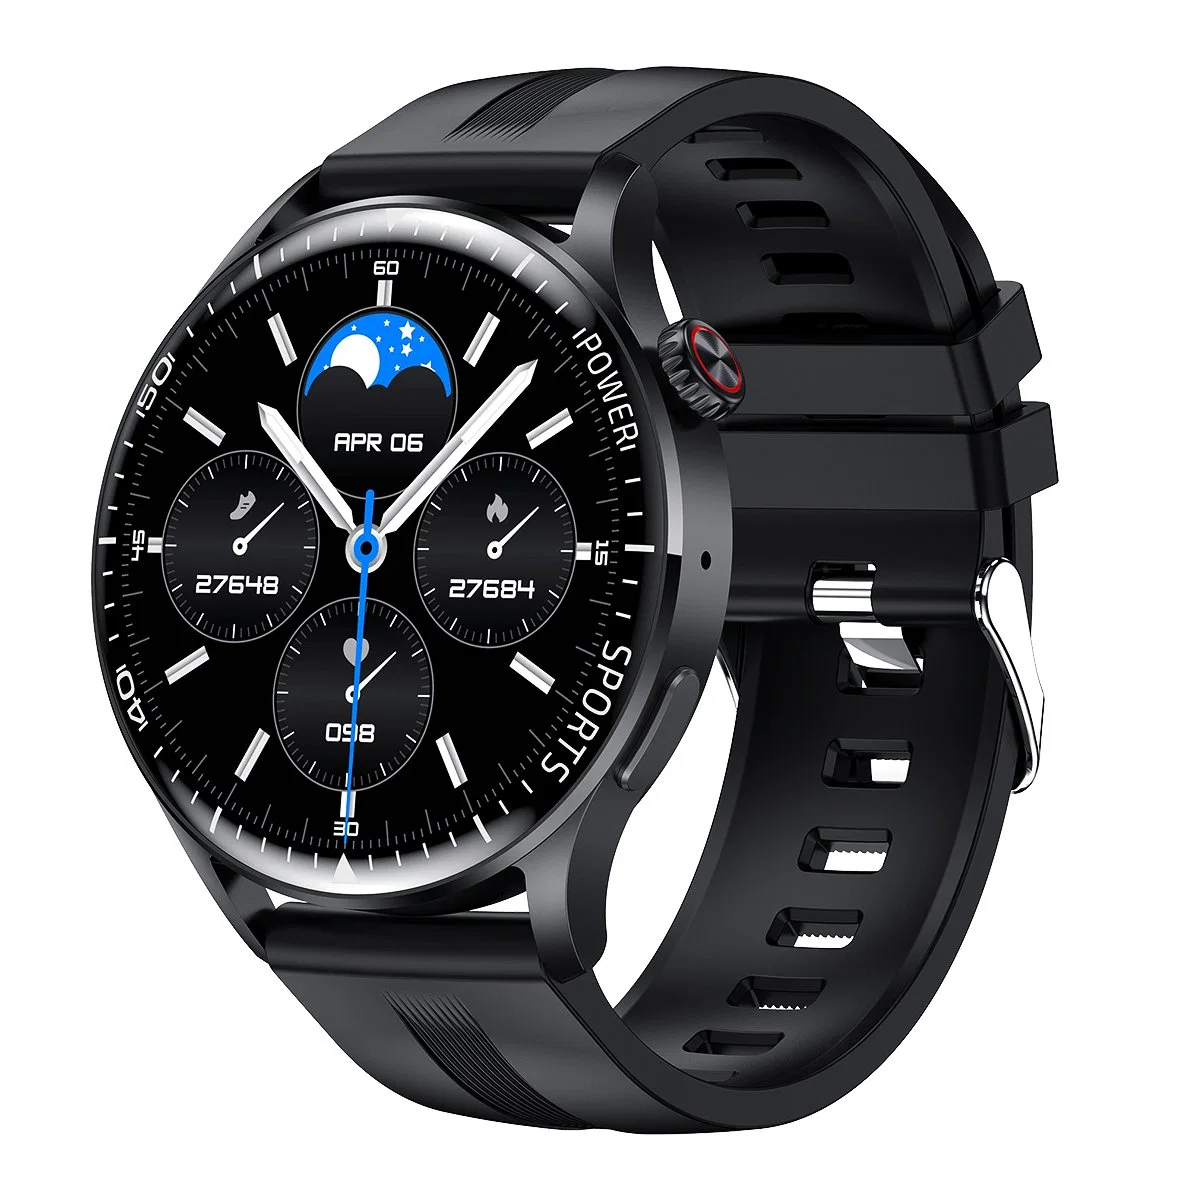 Reloj inteligente de moda deportiva multifuncional con pantalla grande, llamada telefónica Bluetooth, para niñas, mujeres y hombres. Smartwatch.